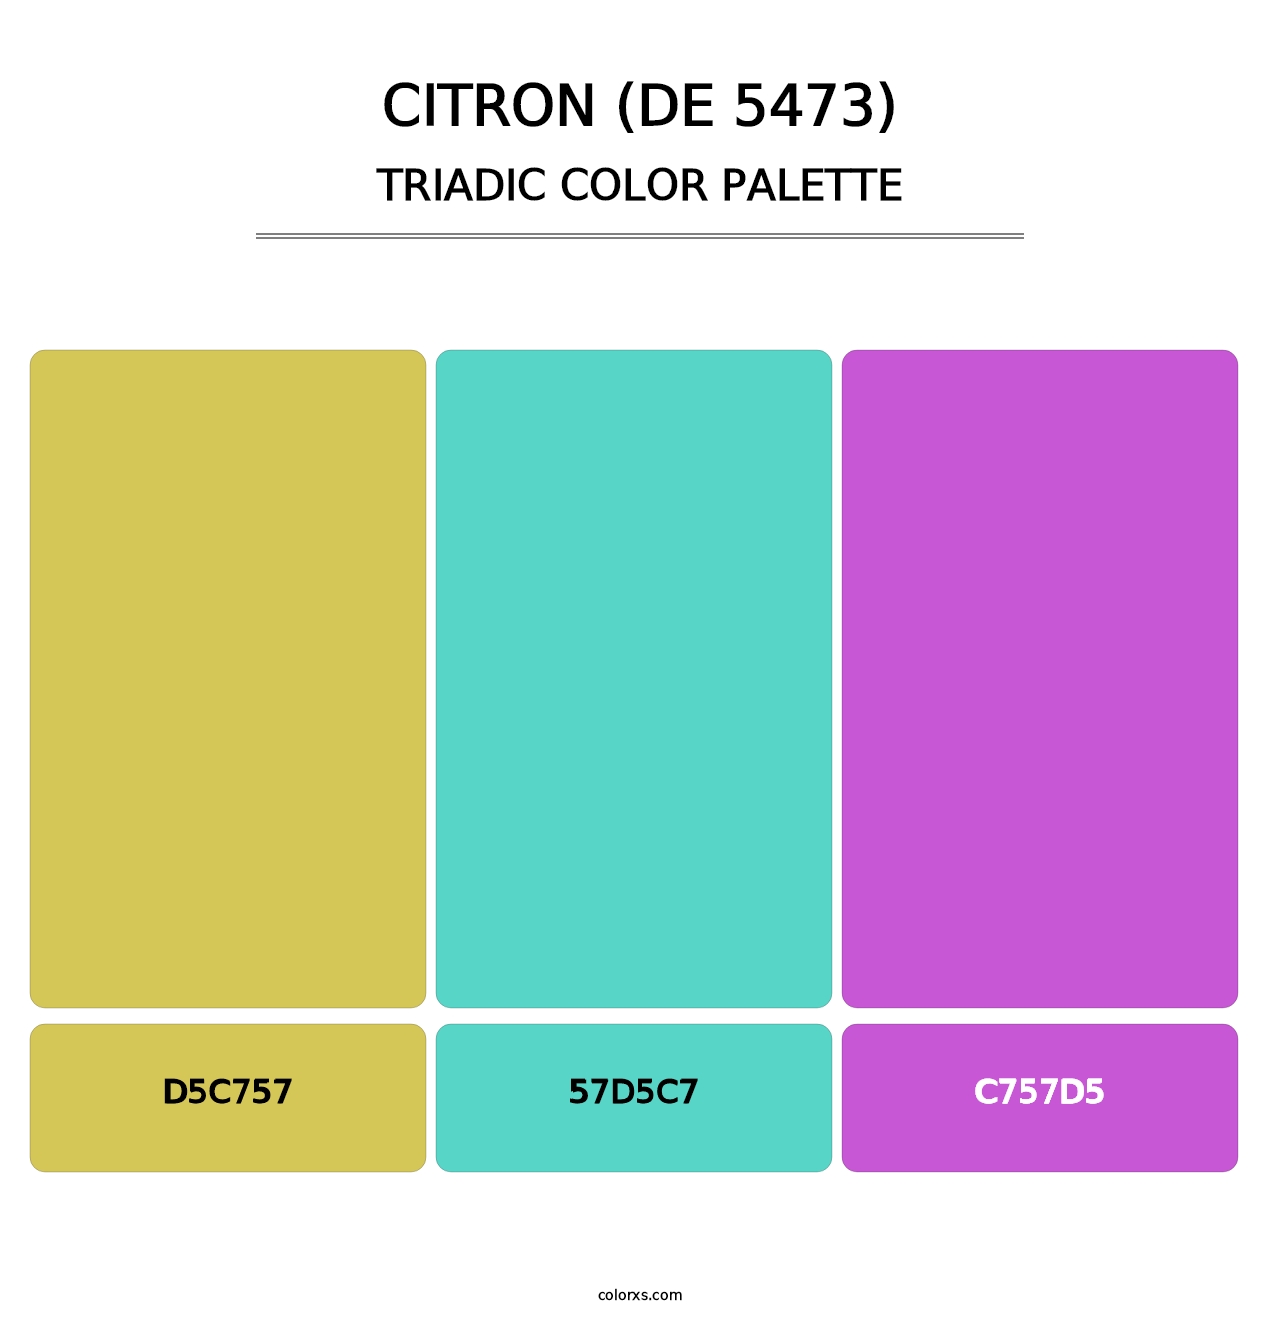 Citron (DE 5473) - Triadic Color Palette